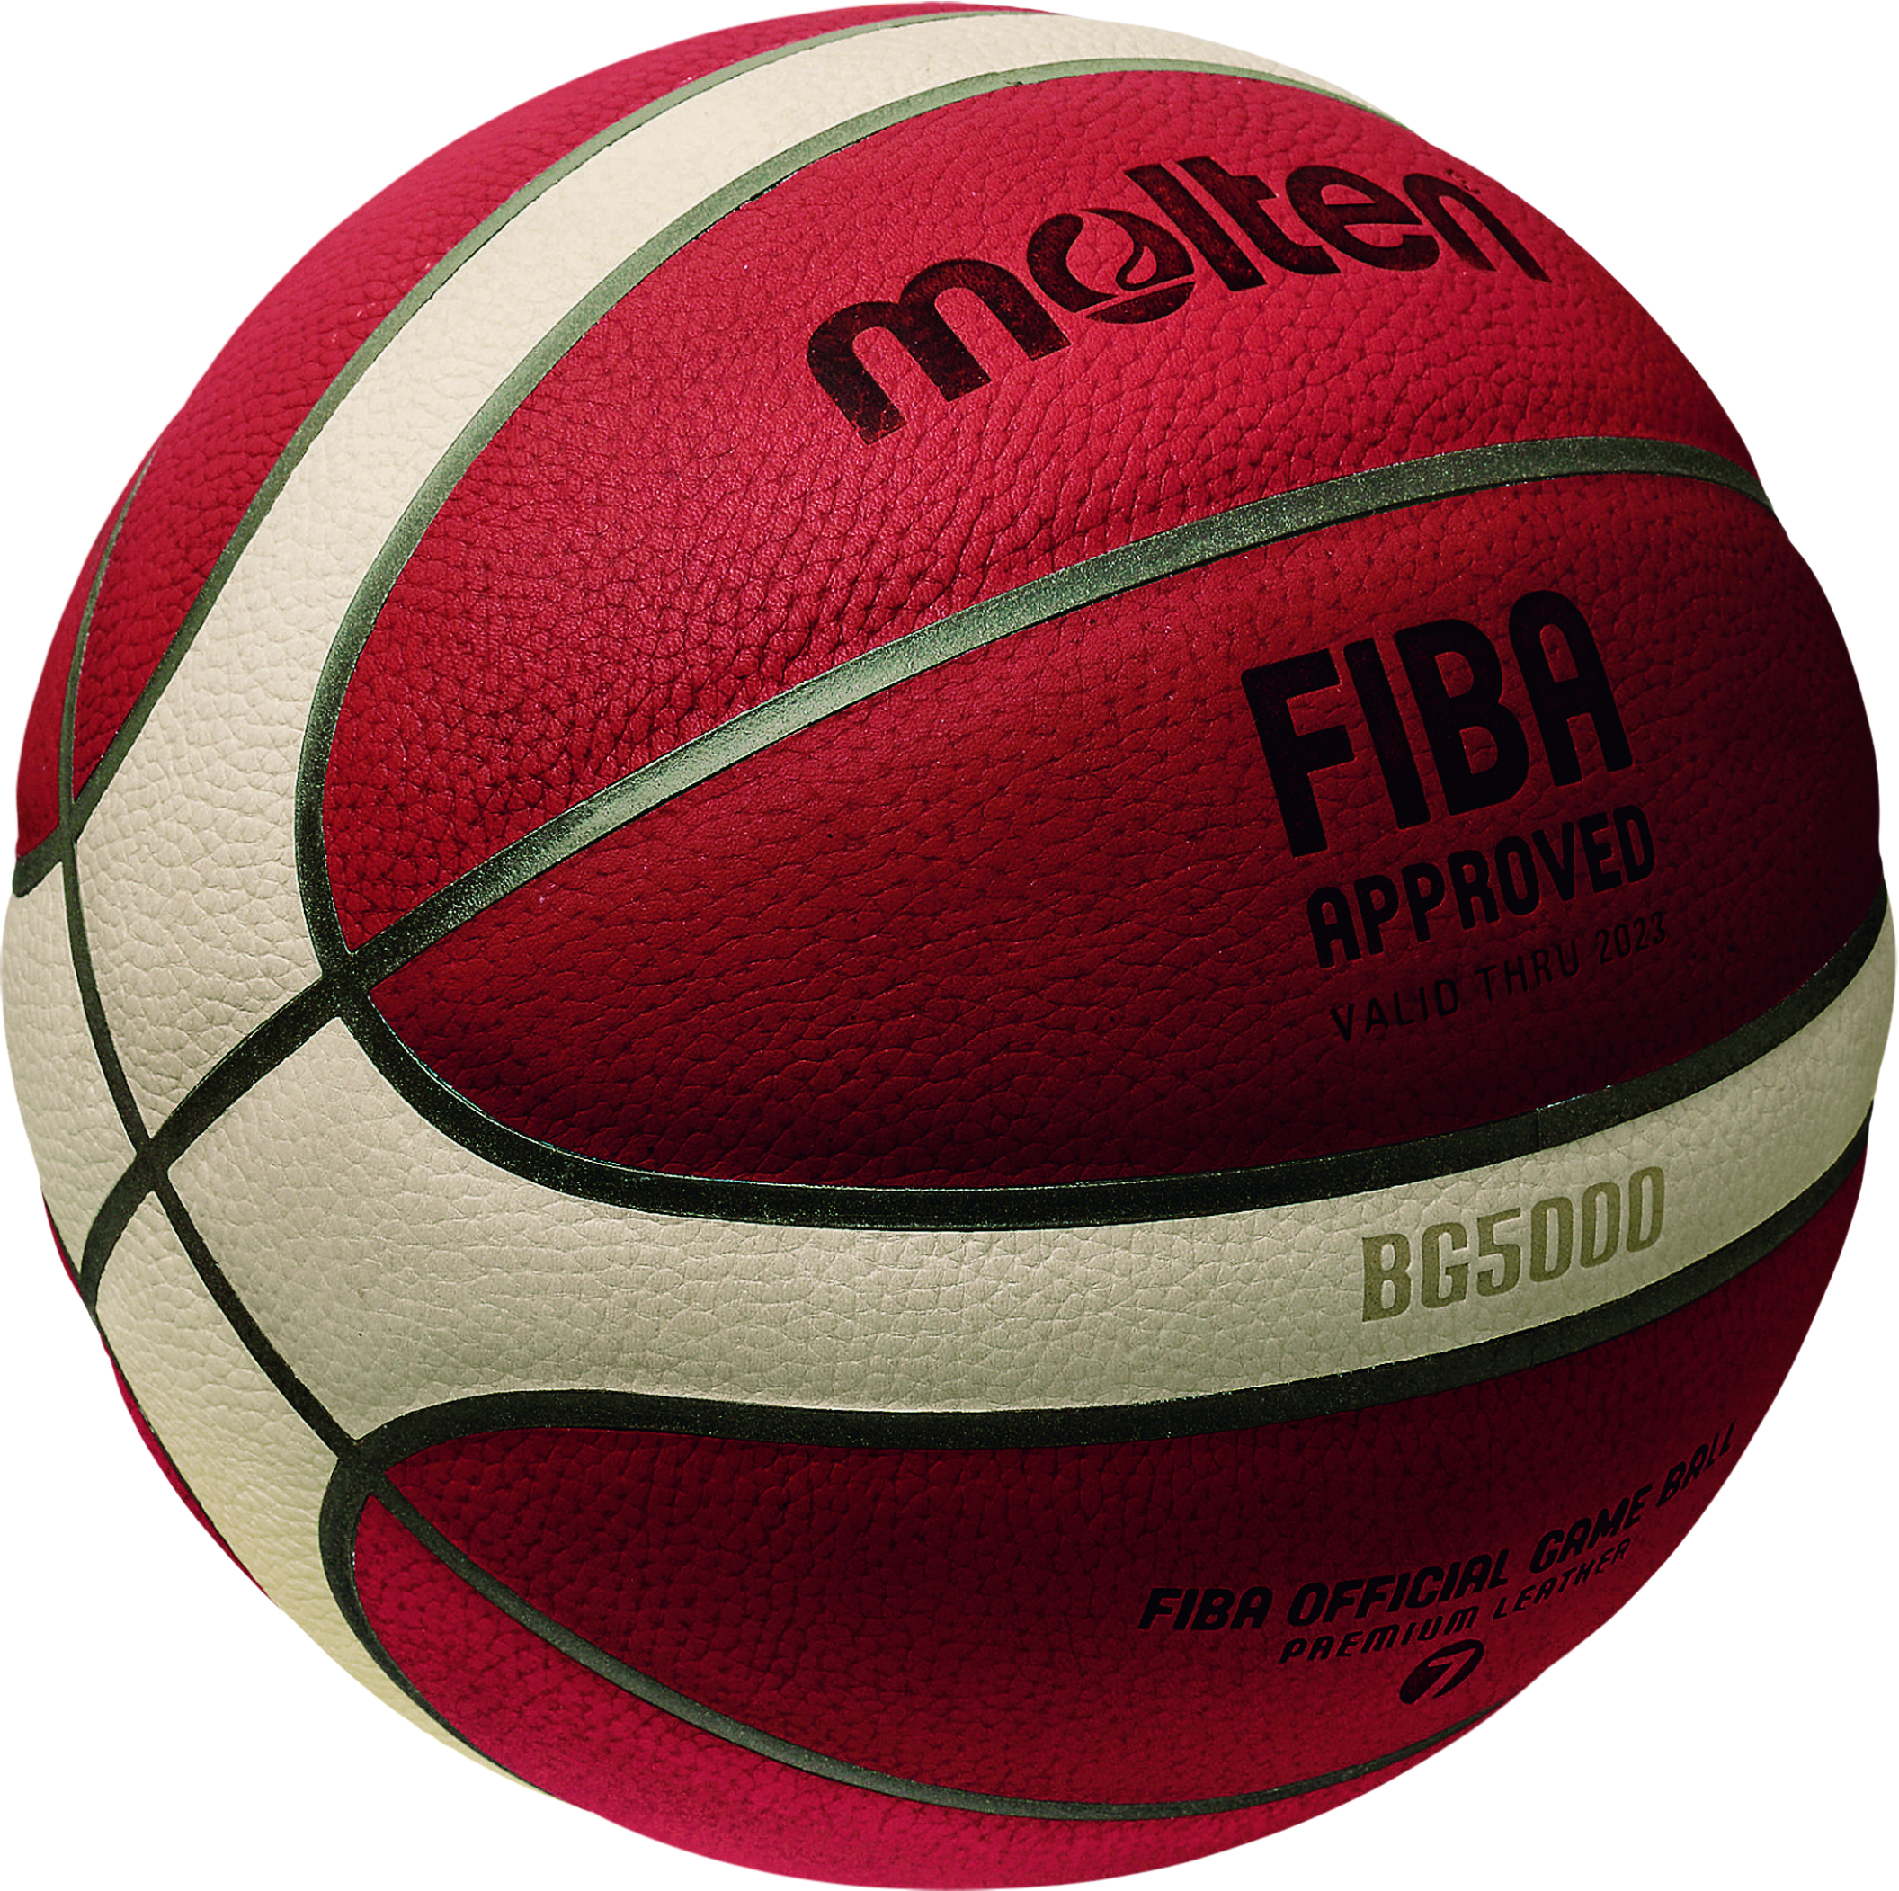 モルテン、FIBA主催の国際⼤会で使用する公式球「BG5000」を発売 | バスケットボールキング